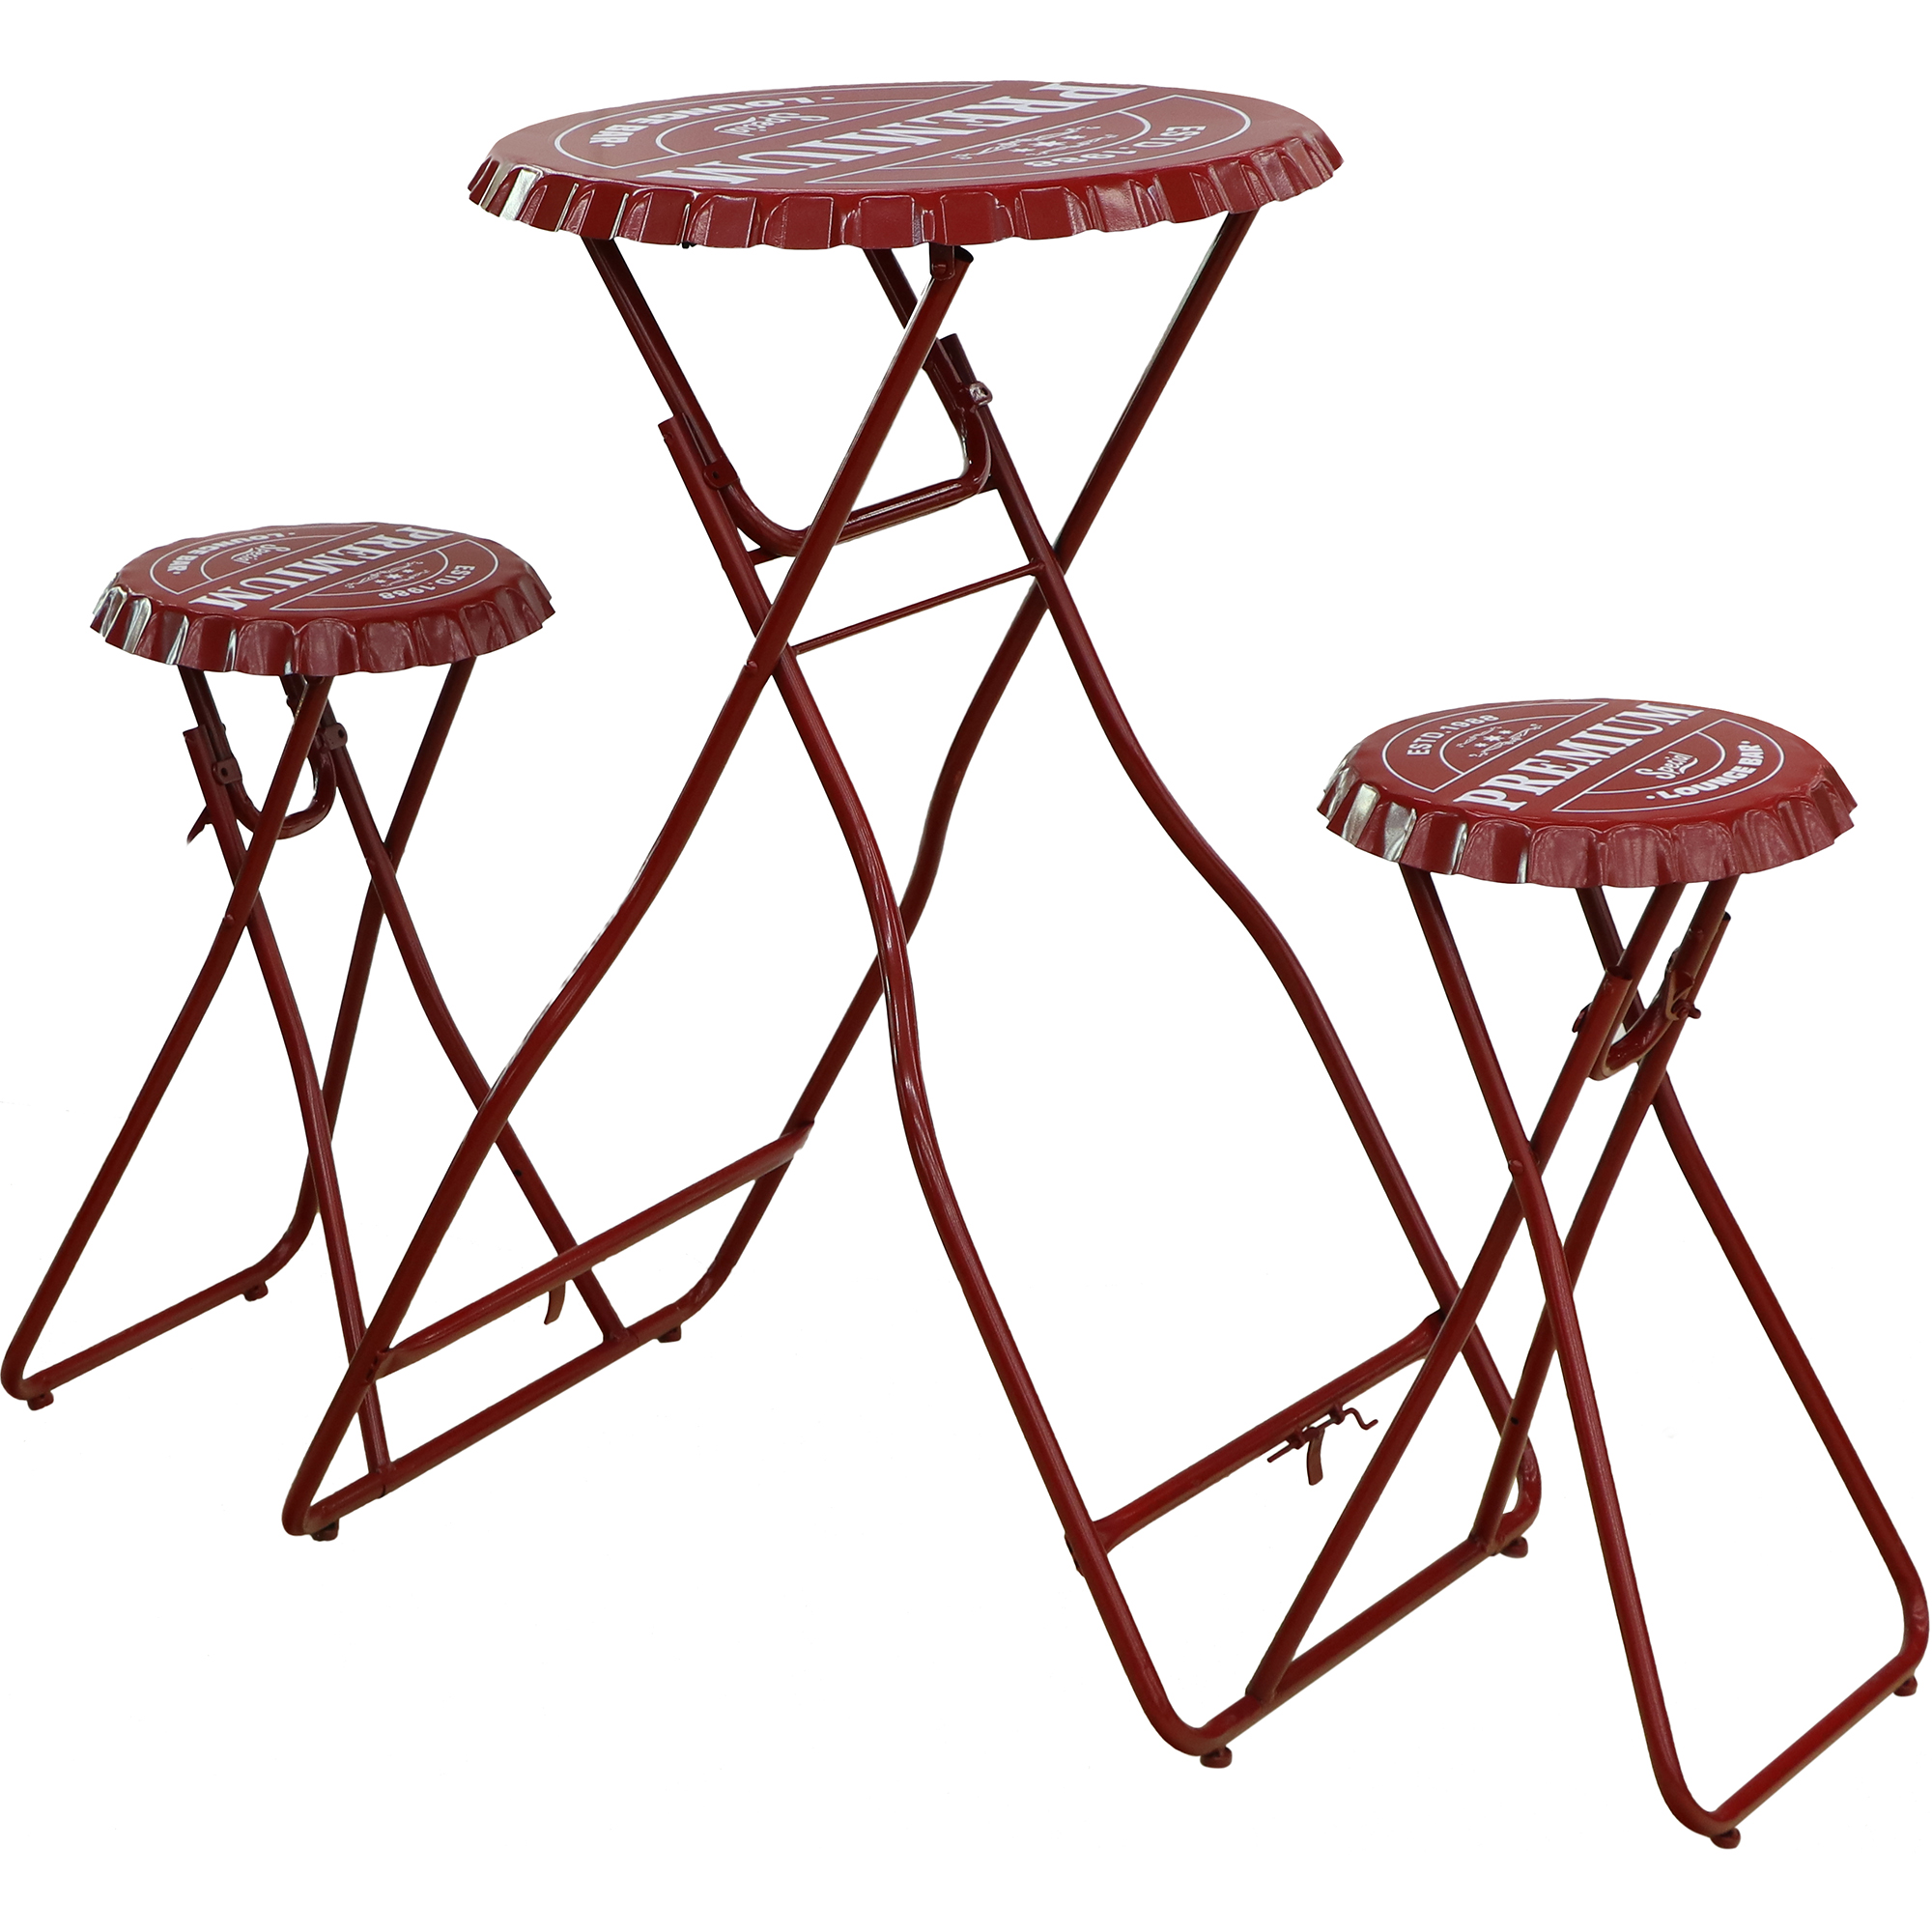 Мебель Koopman furniture пивная пробка 2 табурета и стол, цвет красный, размер 60х60х100 см - фото 1